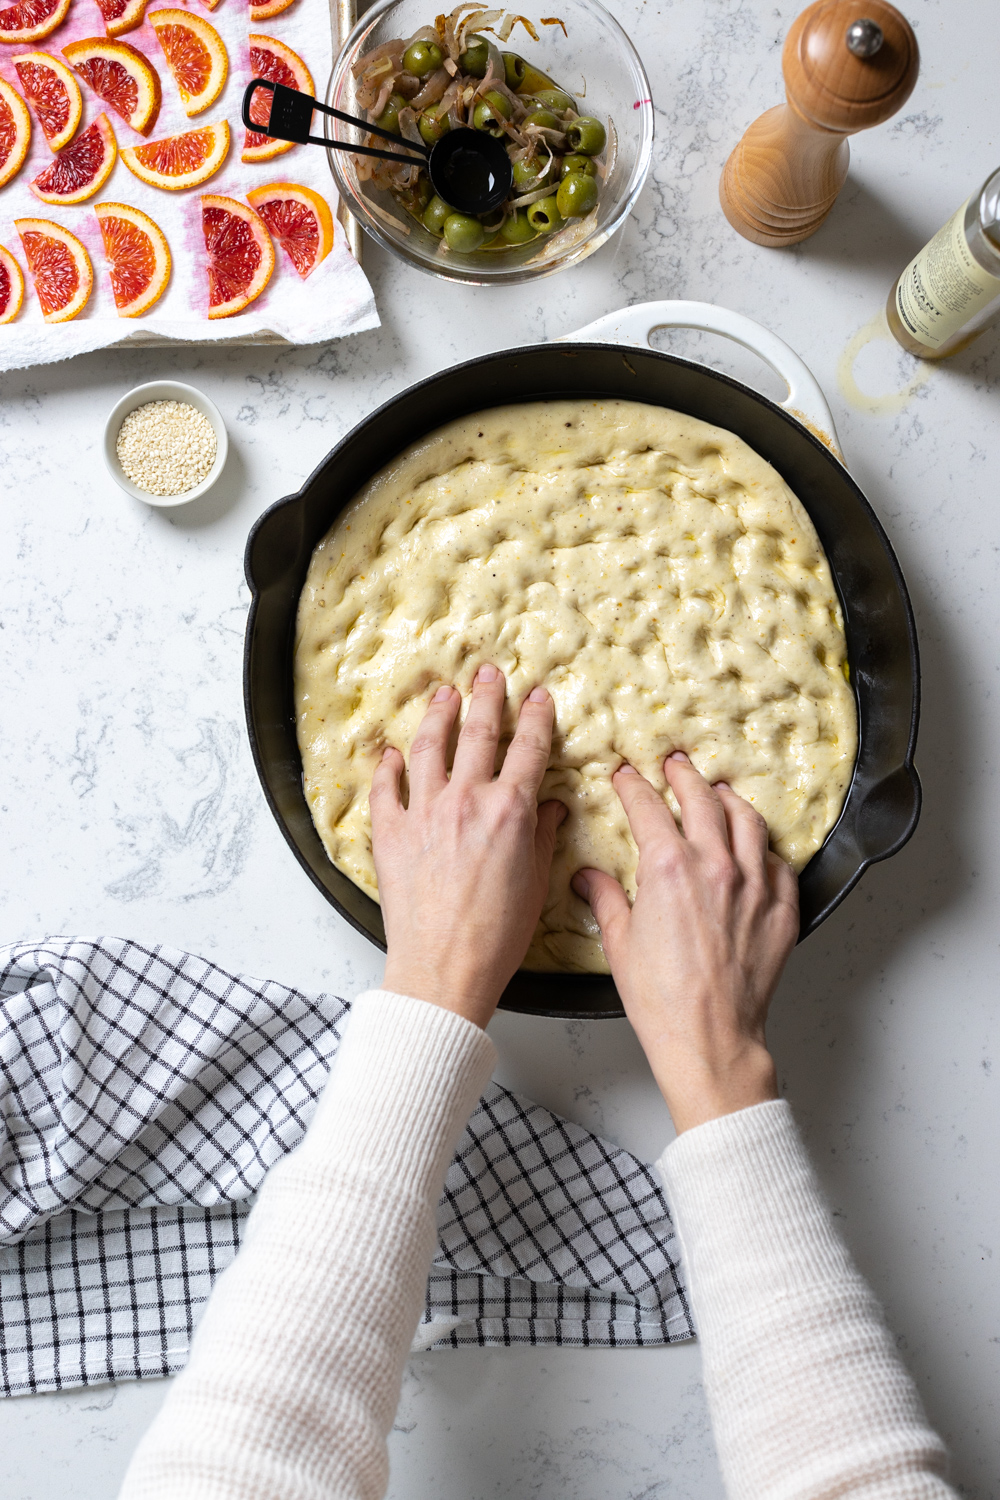 dimpling focaccia dough